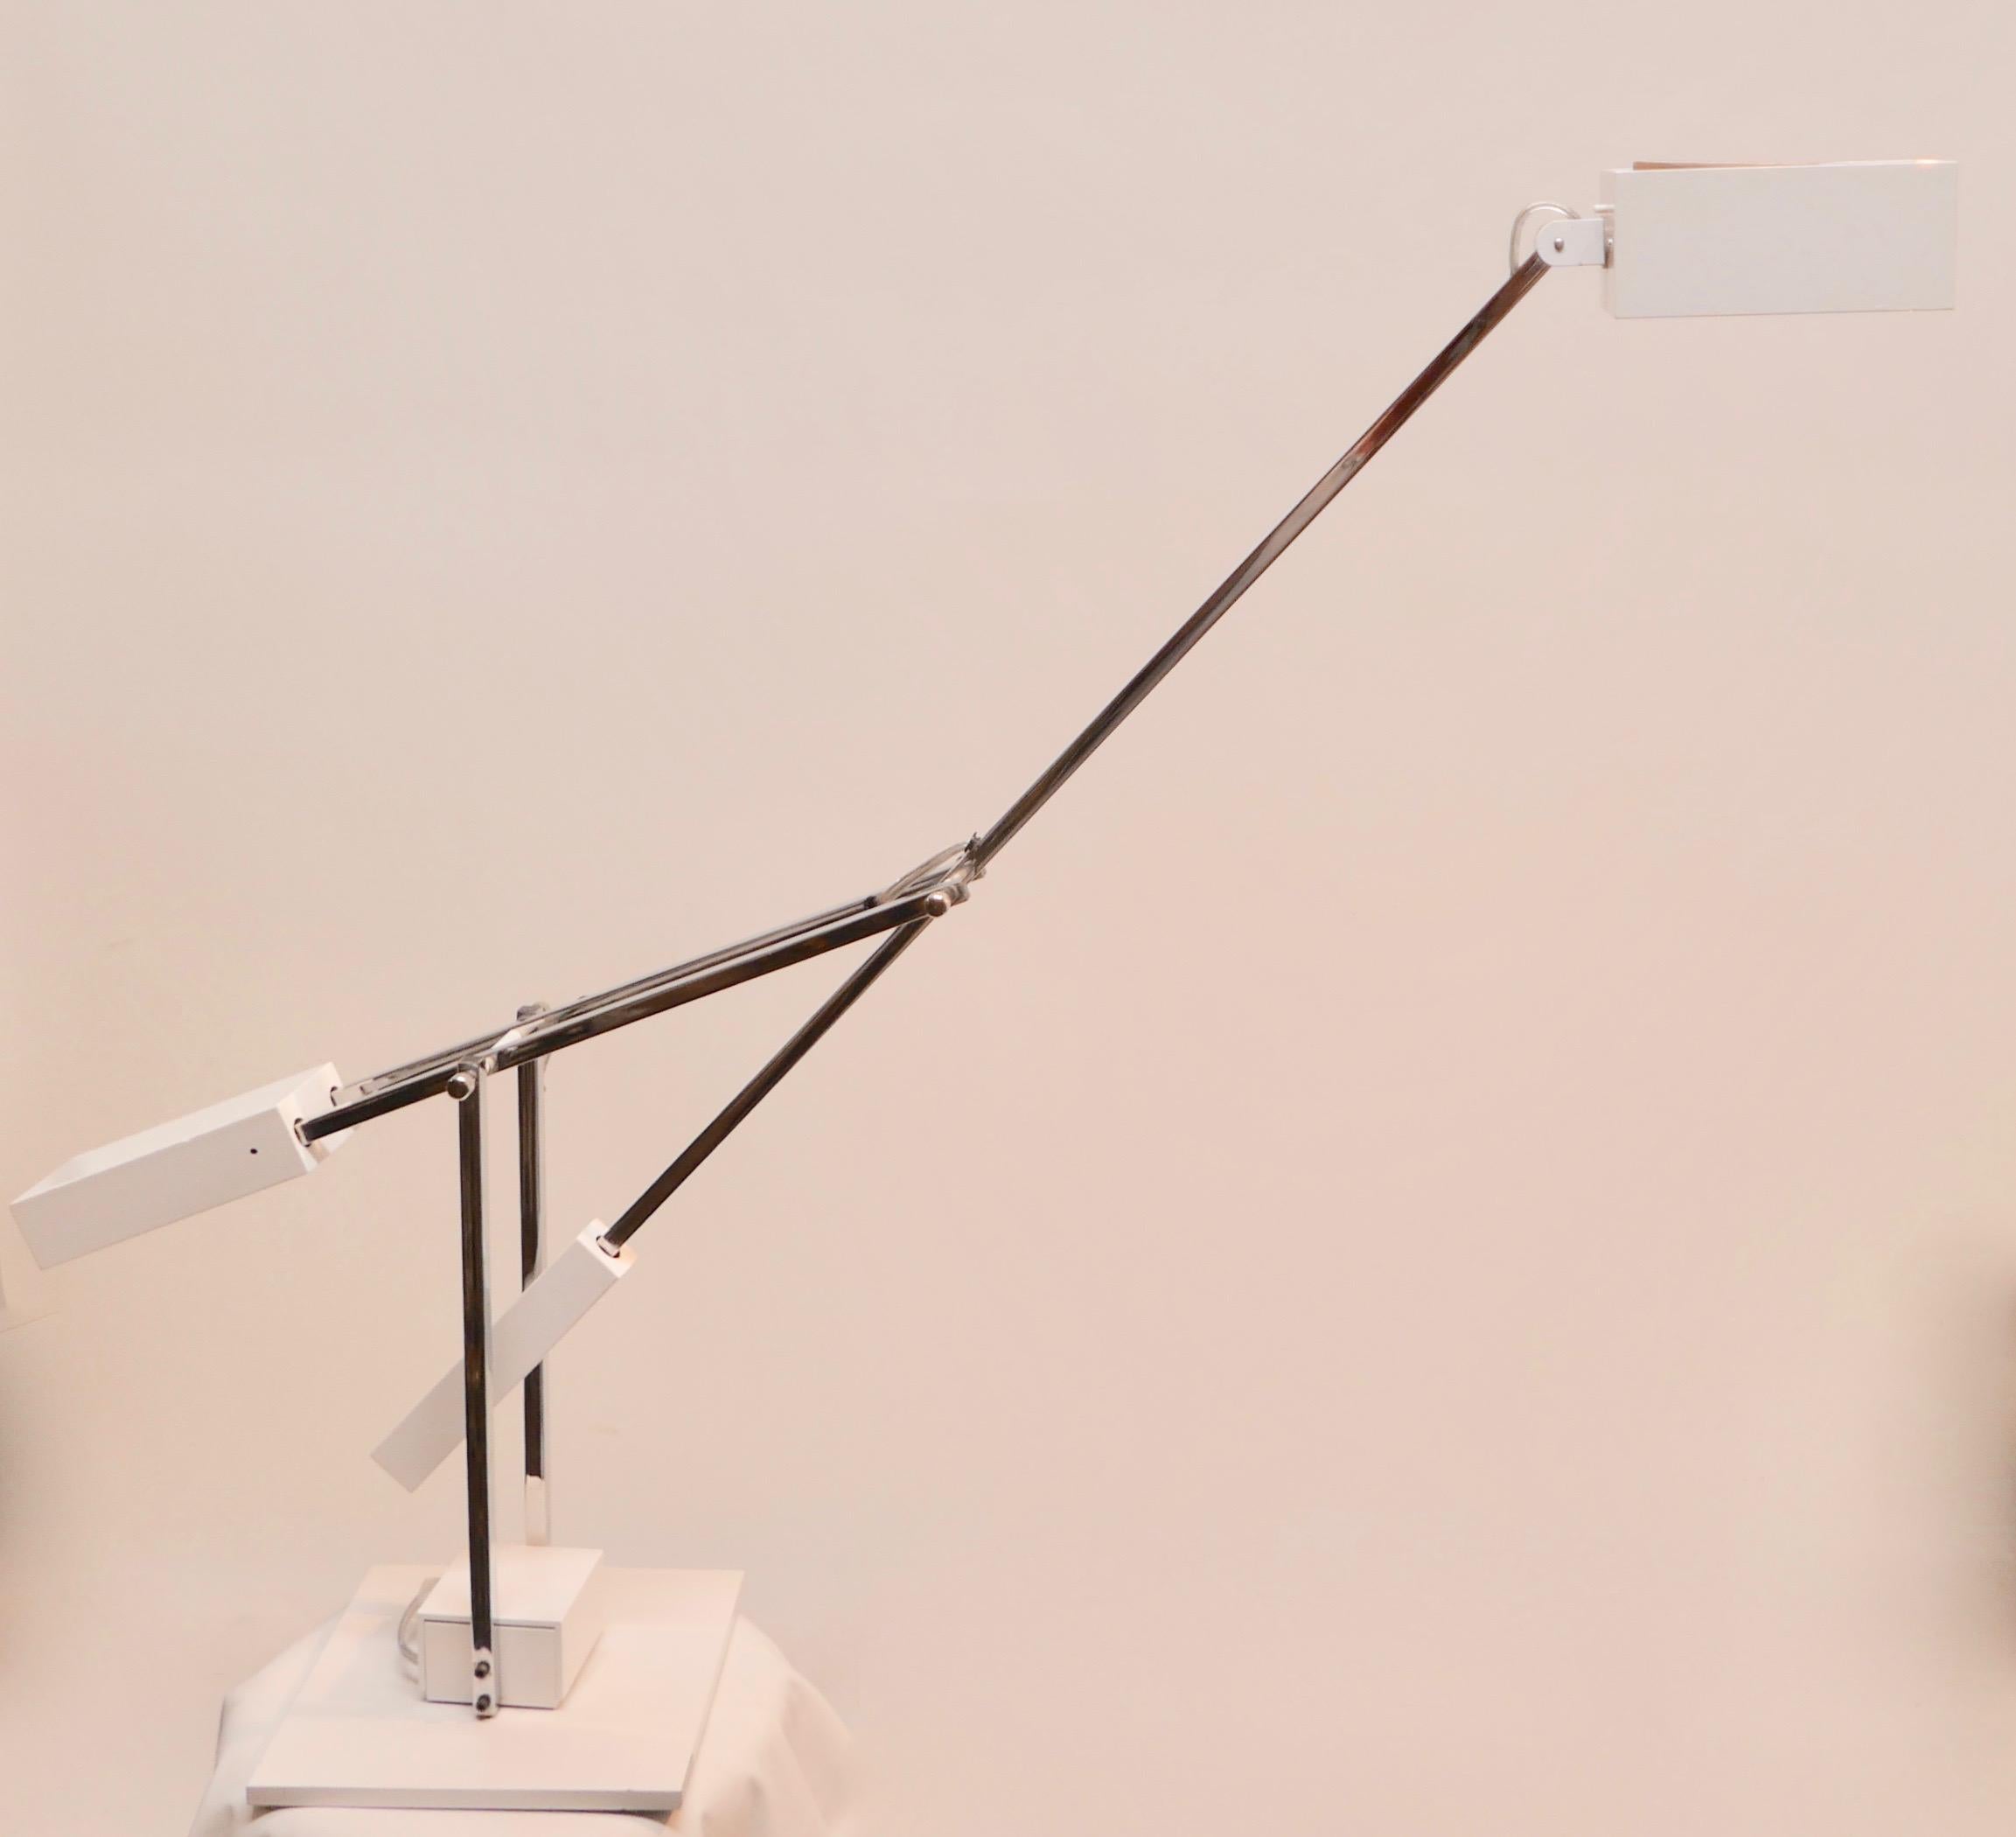 Eine schöne Mid-Century Modern / Minimalist artikulierenden Chrom und weißem Metall Schreibtischlampe von Robert Sonneman entworfen. Die gegenläufige Leuchte, die über einen Dimmschalter an der Basis gesteuert wird, ist ebenfalls dreh- und